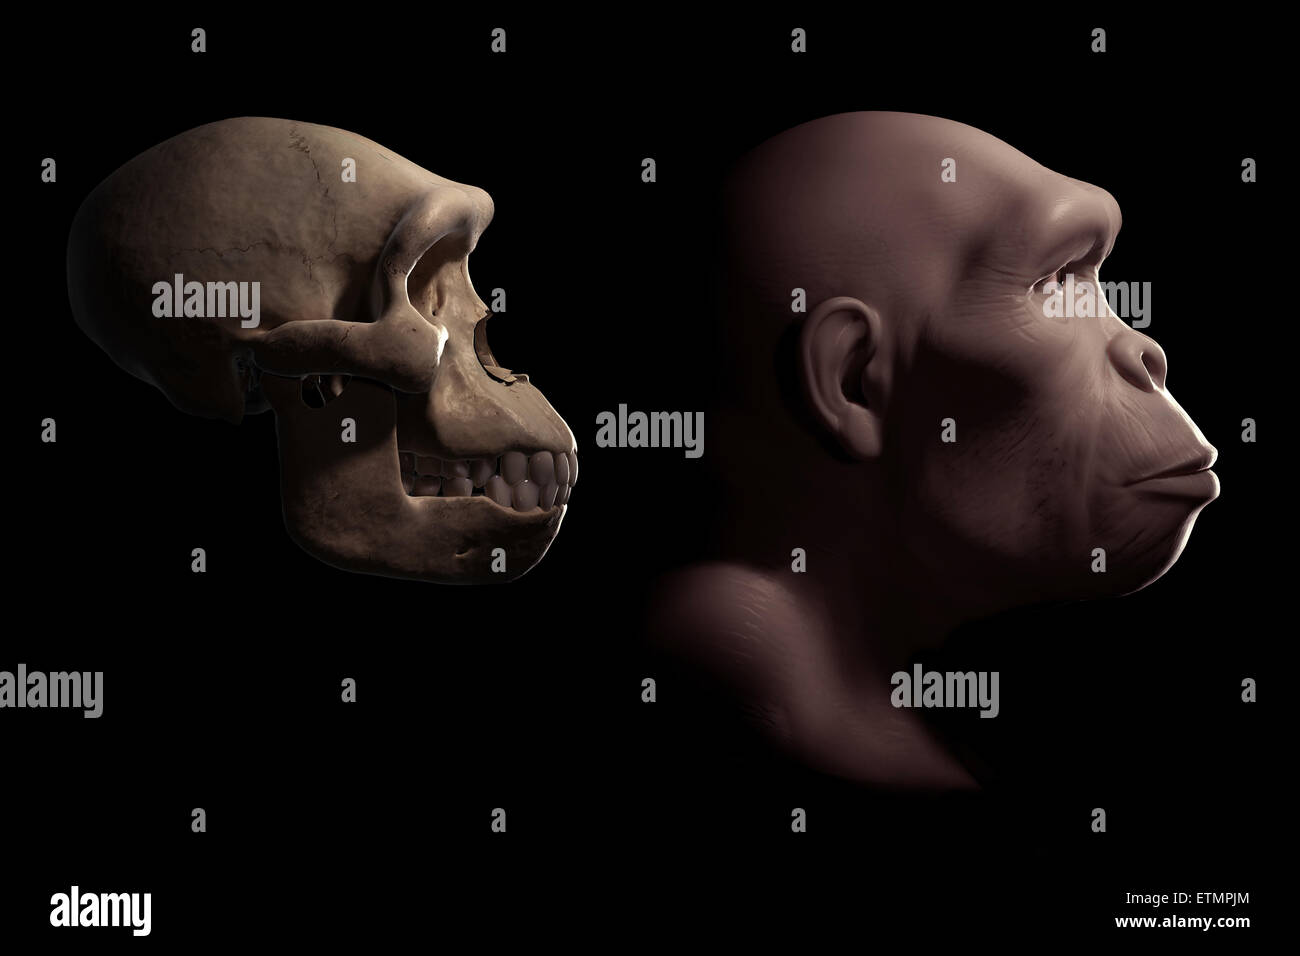 Rappresentazione di un Homo habilis accanto a un Homo habilis cranio per confronto. Homo habilis è un genere estinto di ominidi e predecessore di Homo Sapiens. Foto Stock